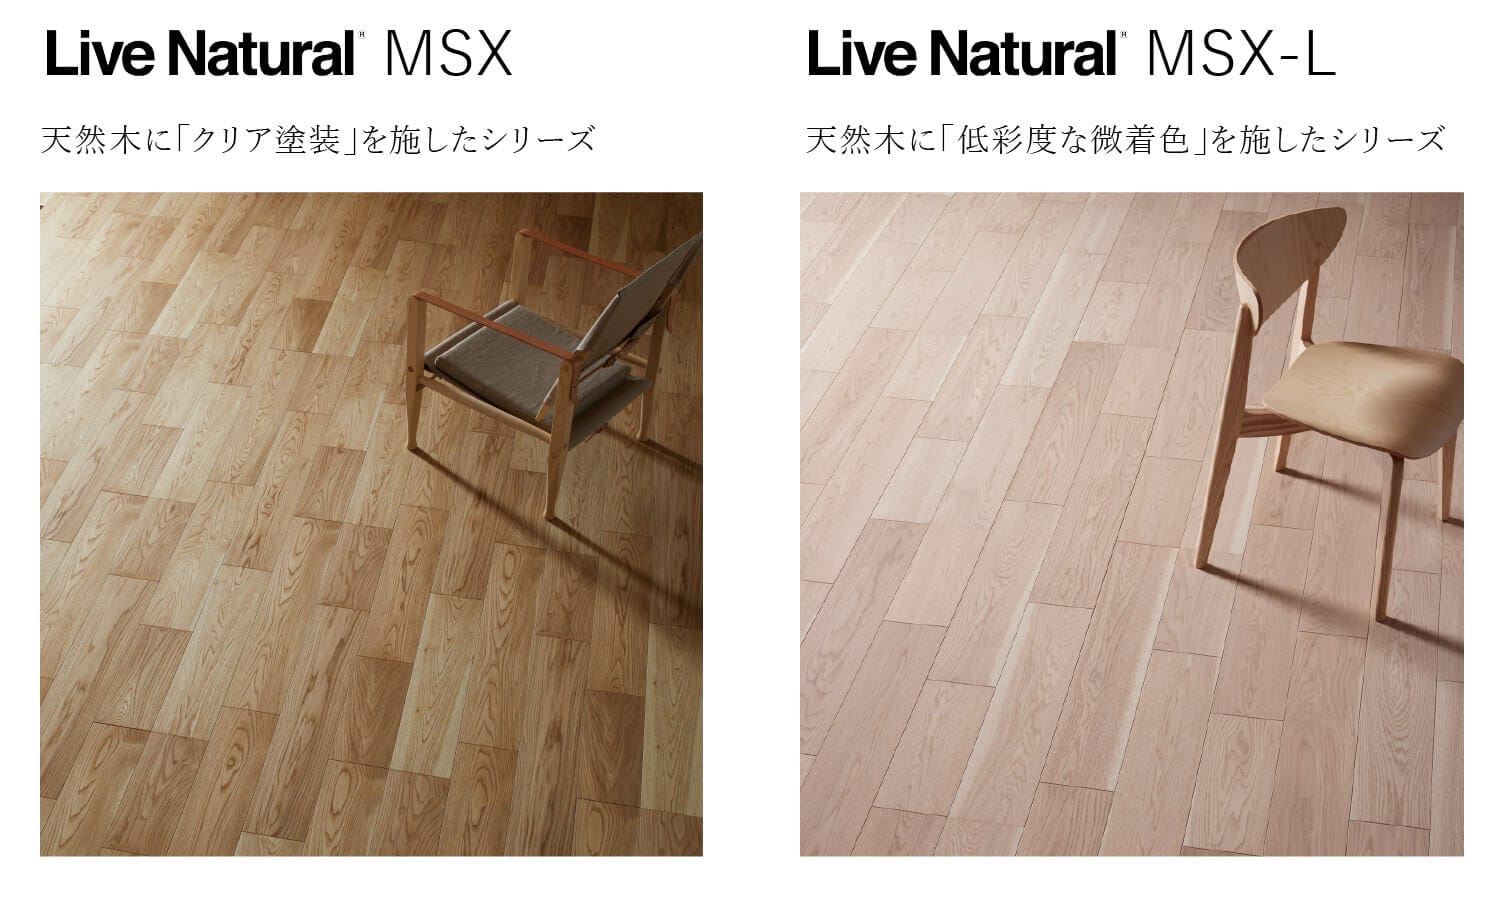 低彩度な微着色を施した天然木フローリング 「Live Natural MSX-L」を